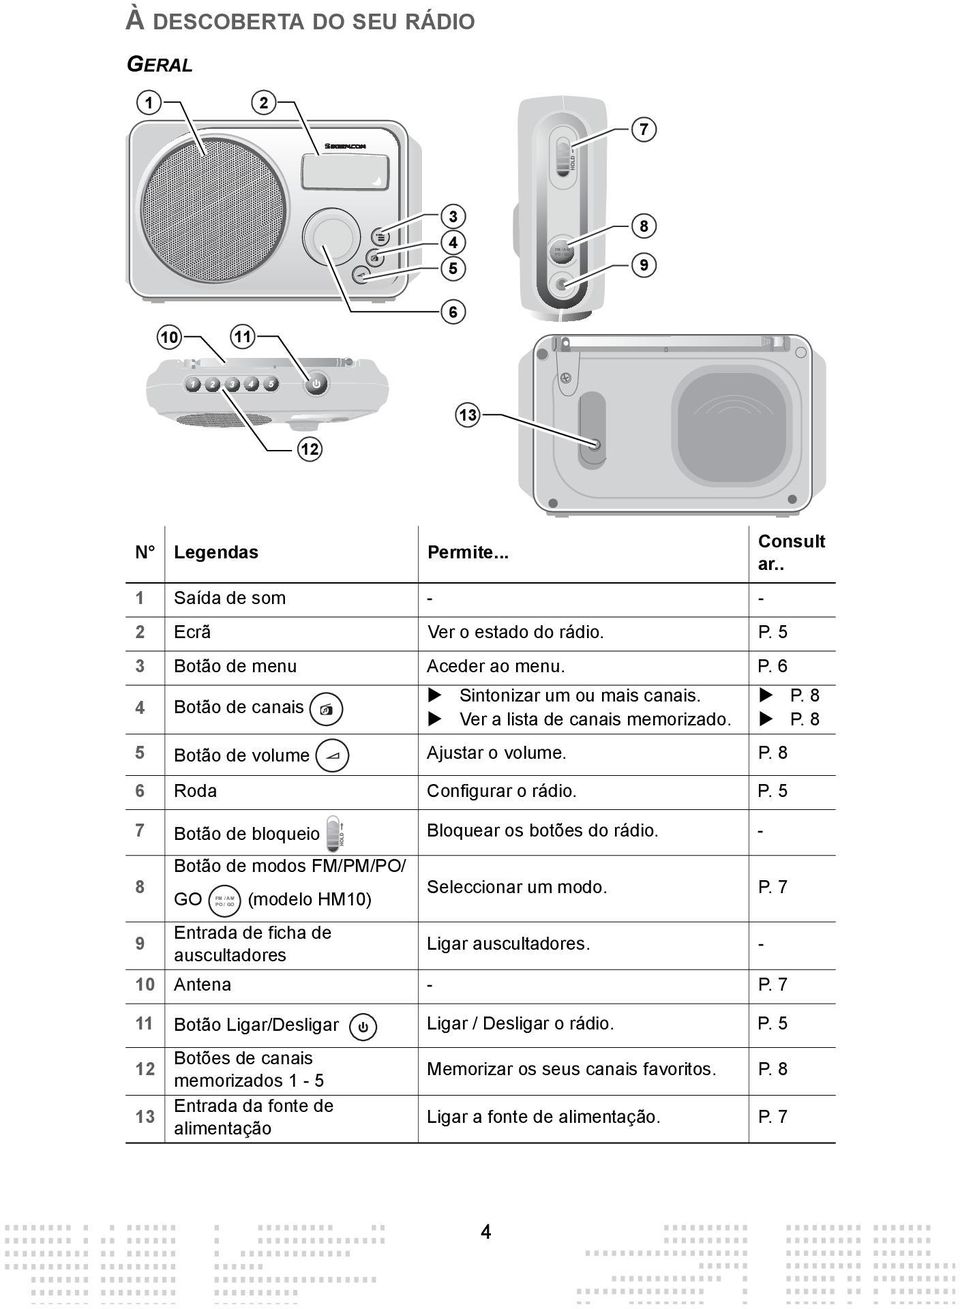 - FM / AM PO / GO Botão de modos FM/PM/PO/ 8 GO (modelo HM10) Seleccionar um modo. P. 7 9 Entrada de ficha de auscultadores Ligar auscultadores. - 10 Antena - P.